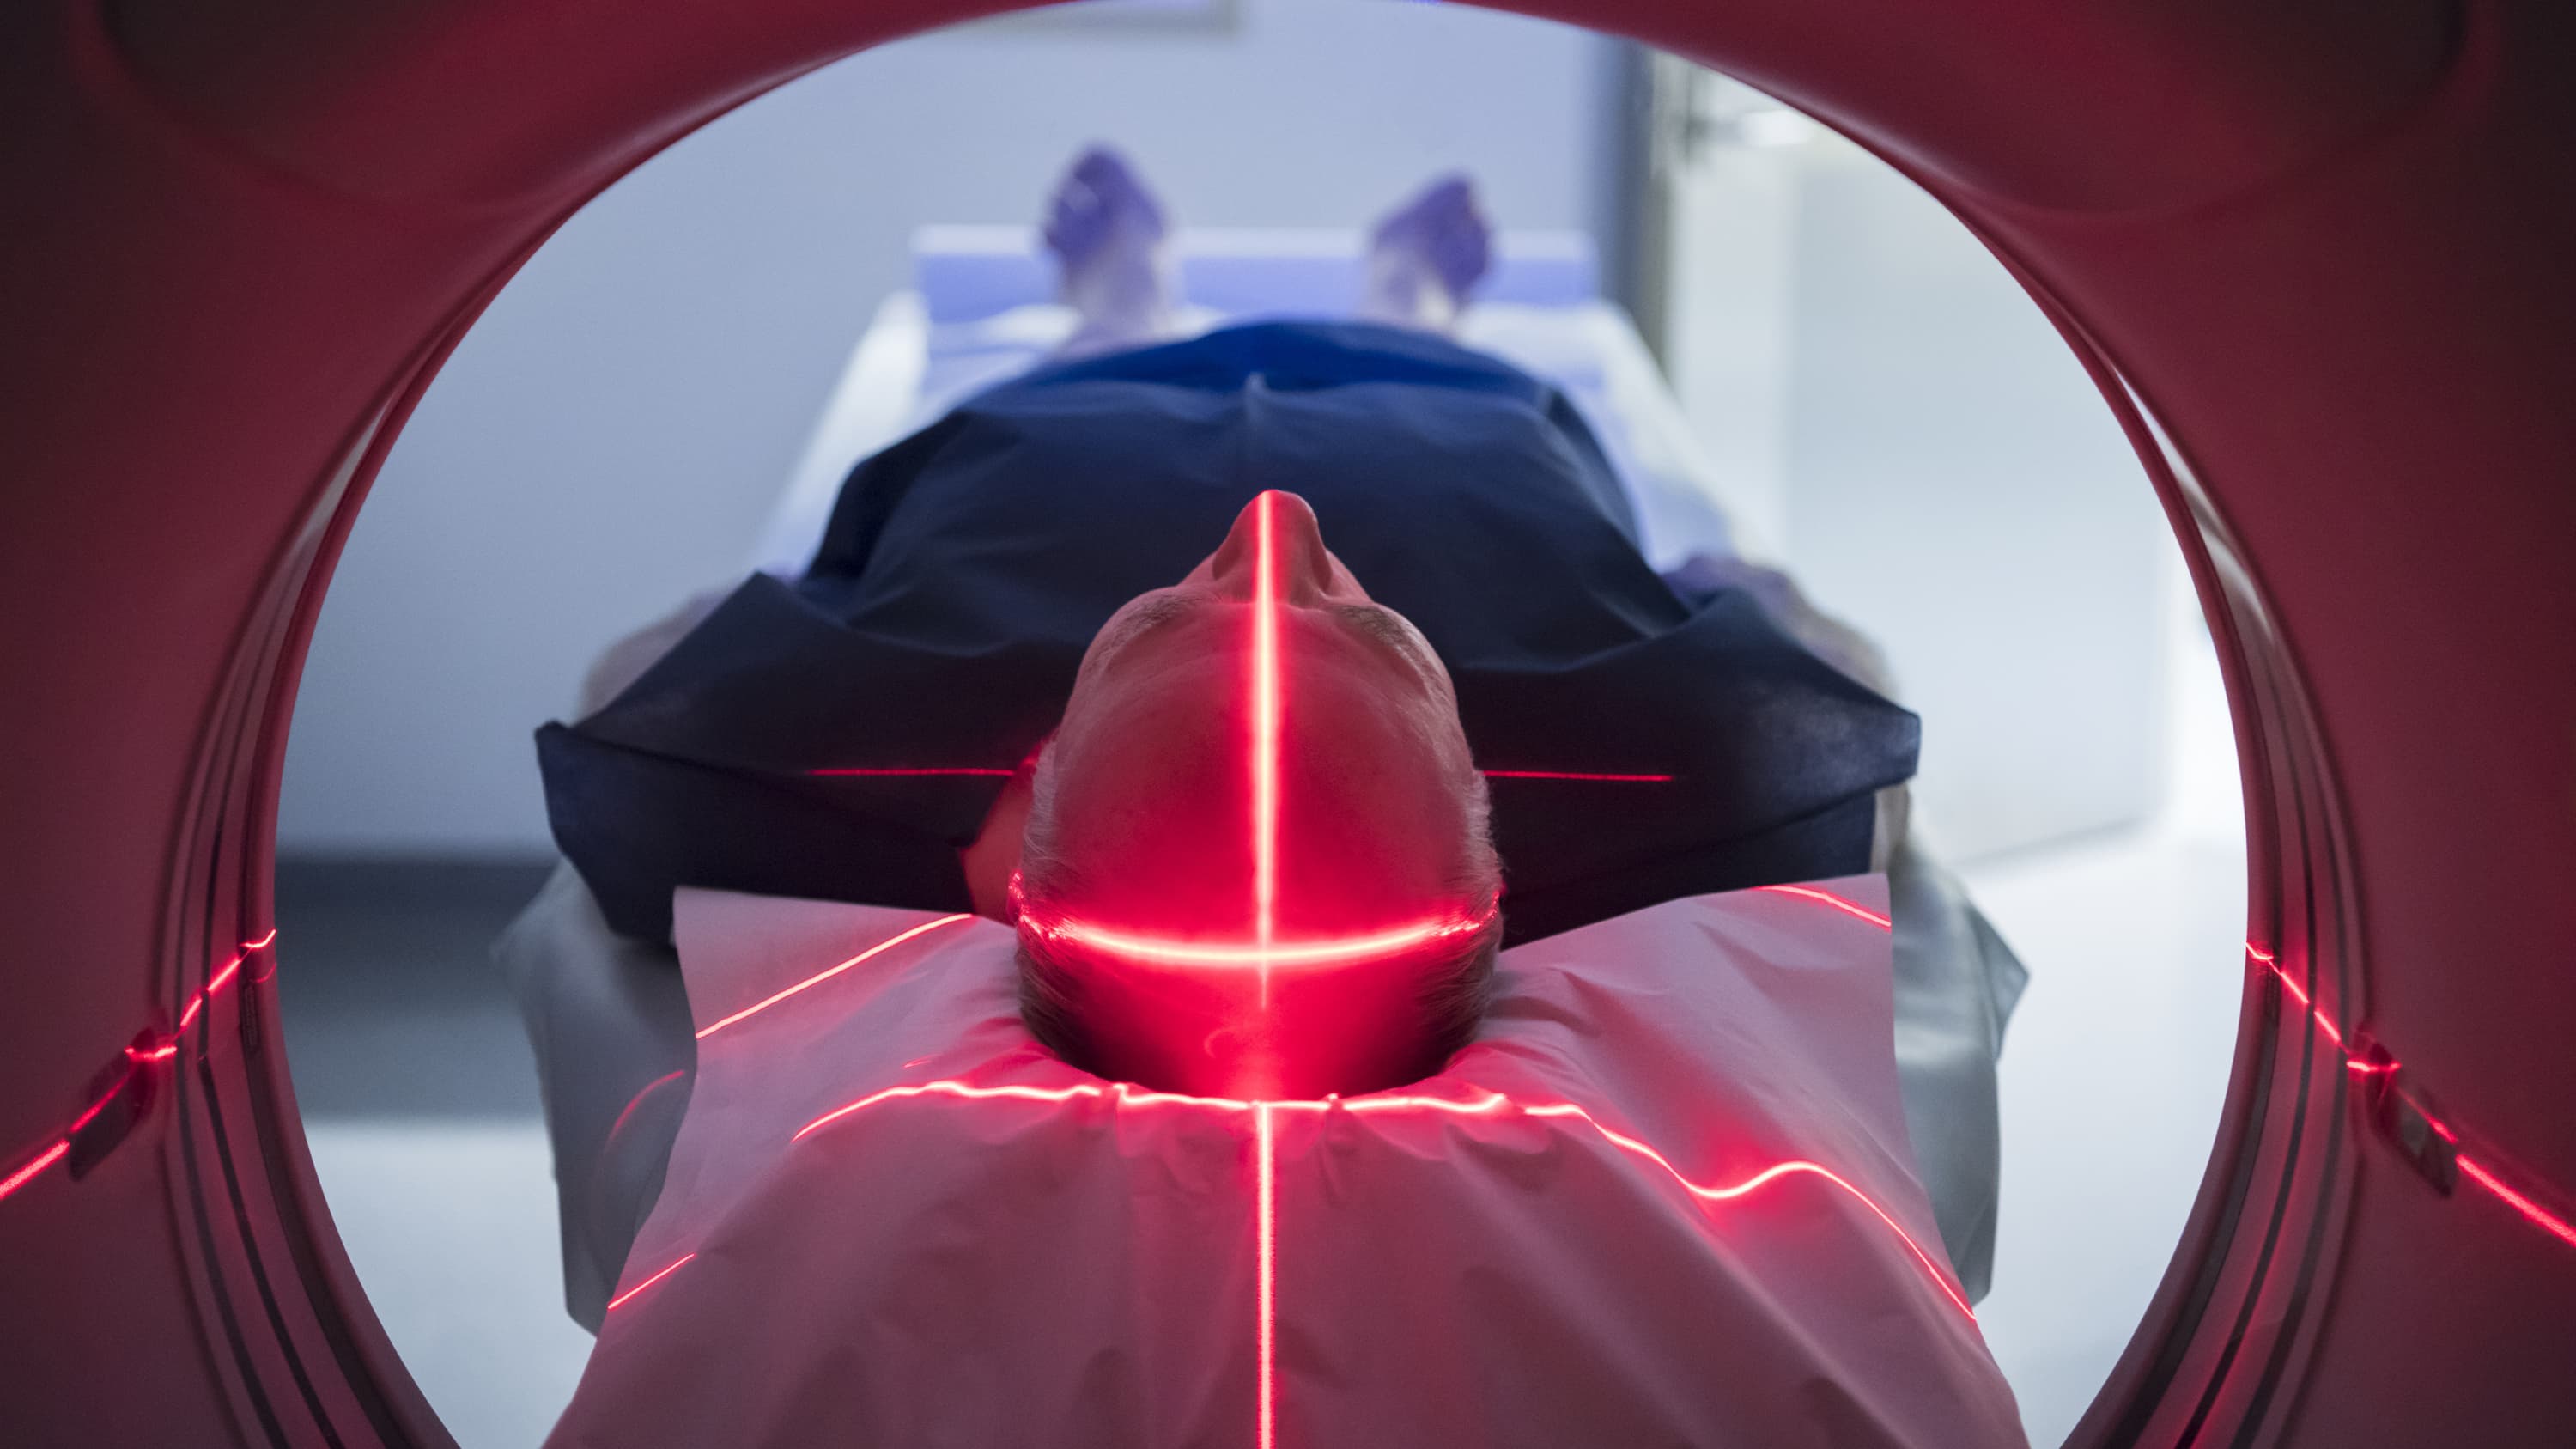 A patient in an MRI machine.